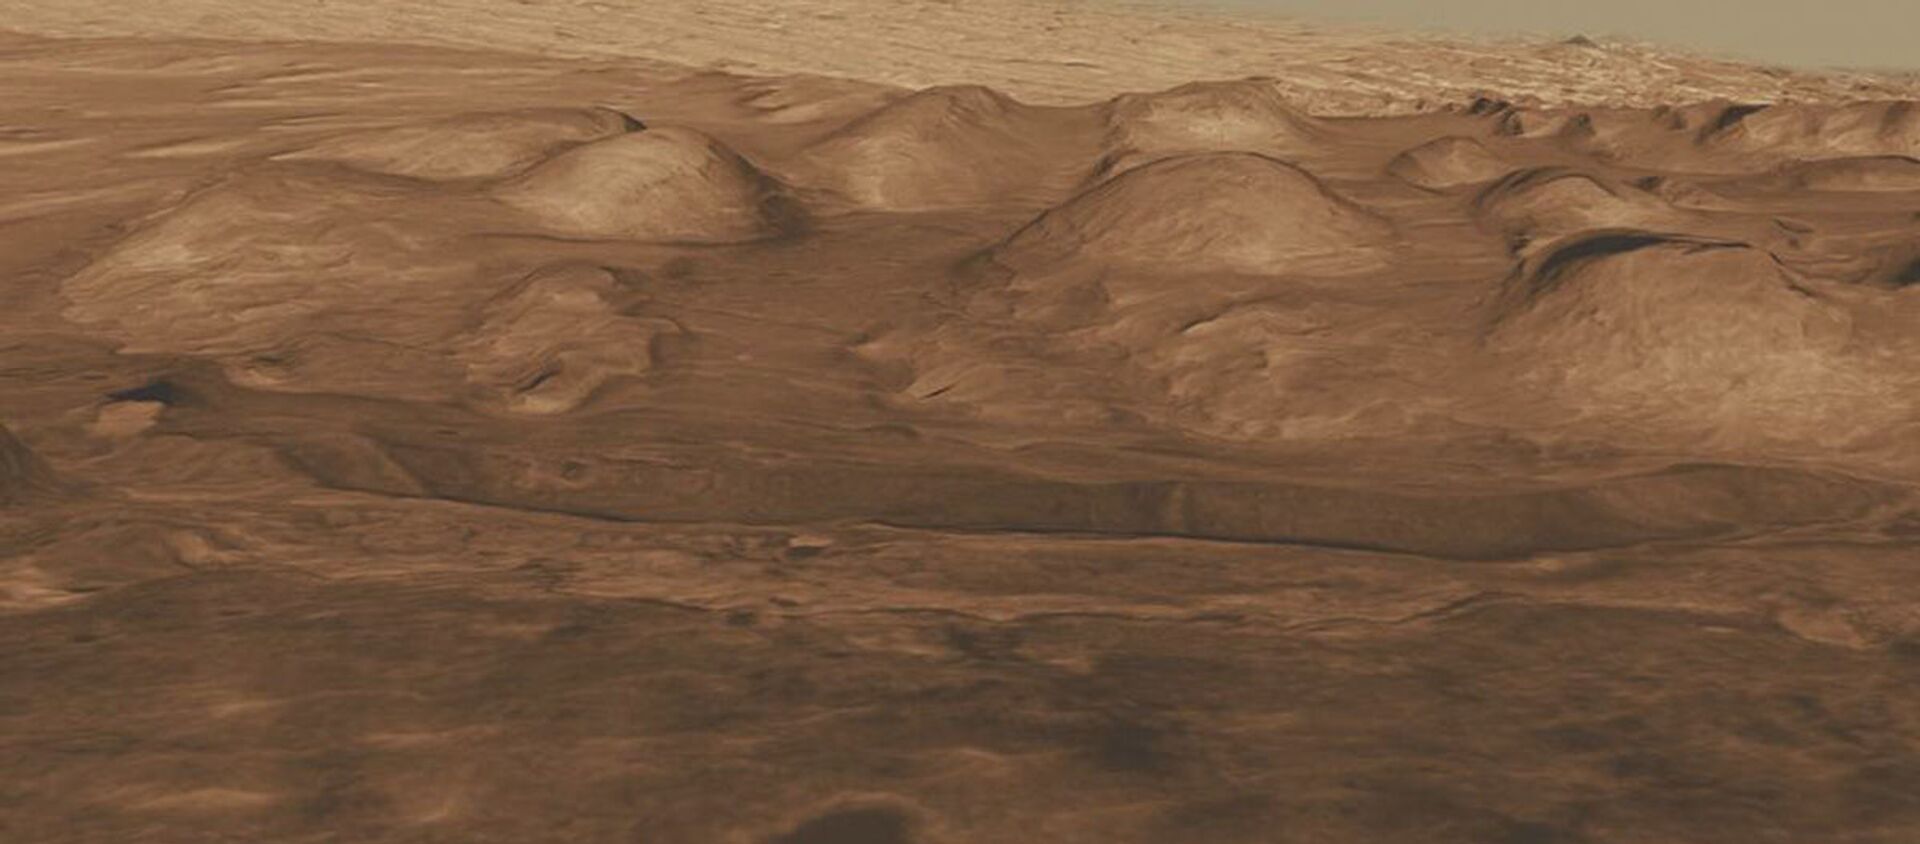 كوكب المريخ - سبوتنيك عربي, 1920, 04.04.2021